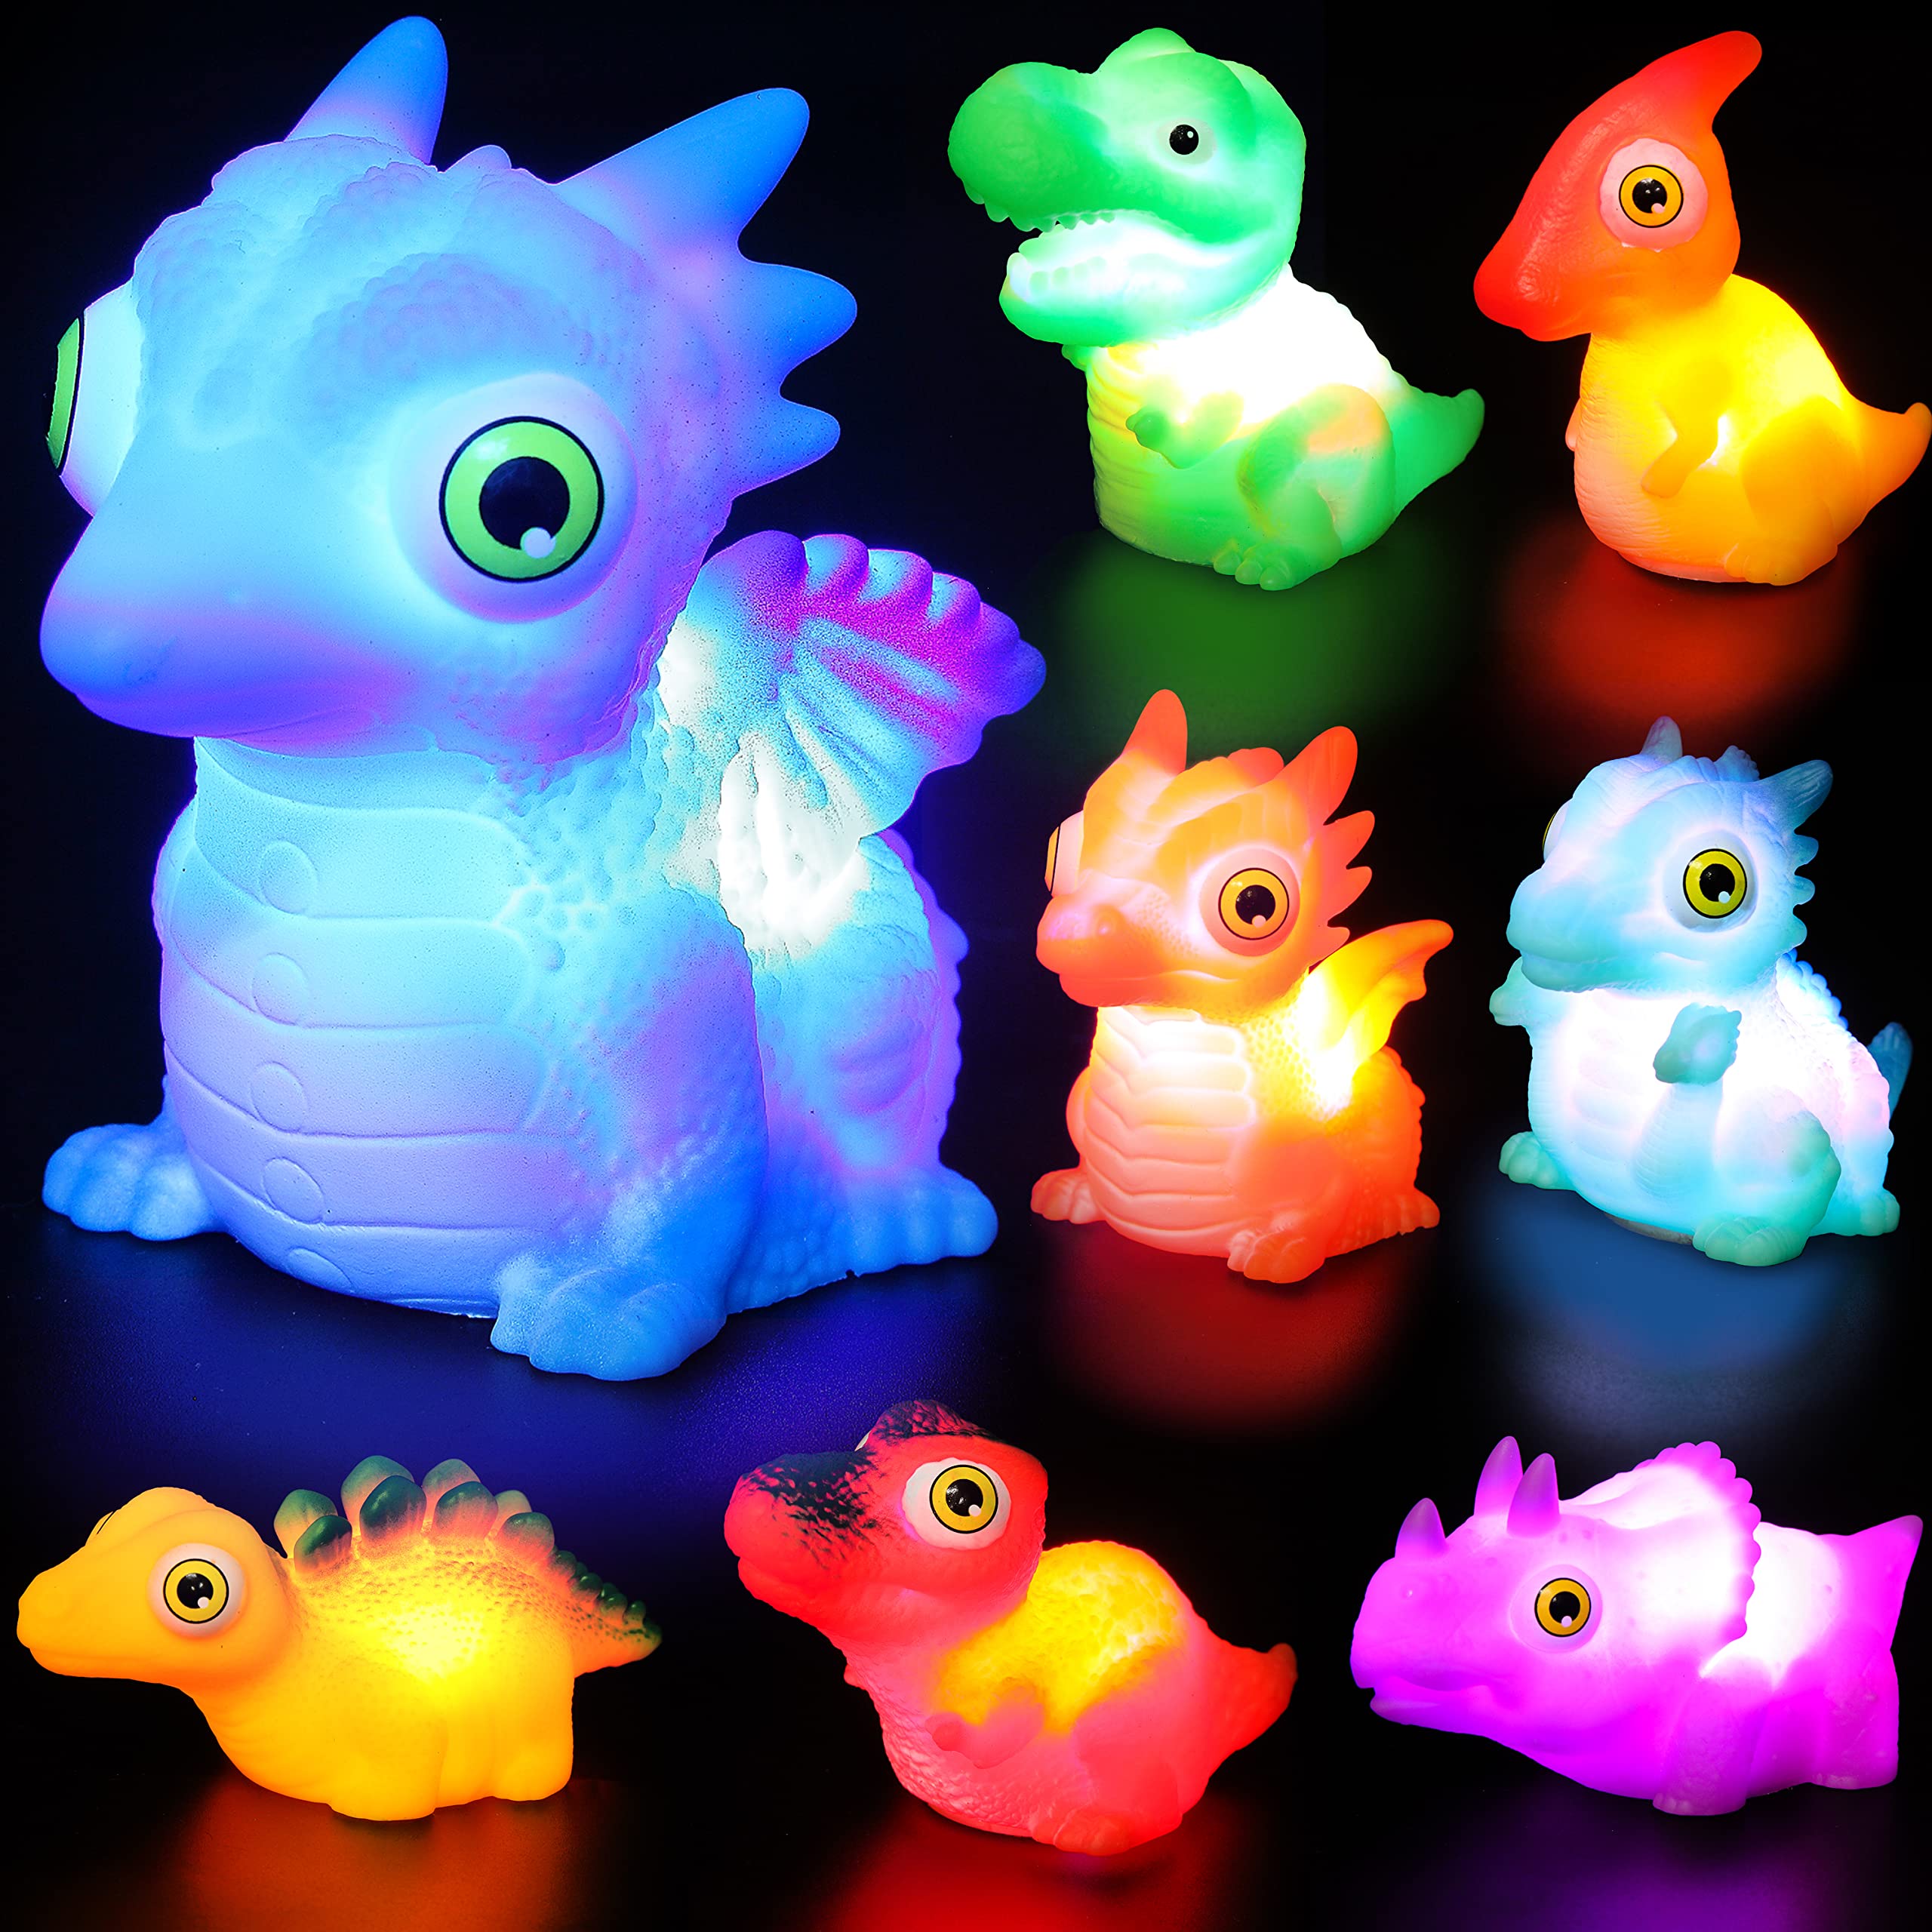 JOYIN 8pcs Light Up Dinosaur Toys, Baby Bath Toy, Toddler Flashing Colourful LED Bathtub Toy, Bathtime Floating Soft Rubber Toy for Infant Boy Girl